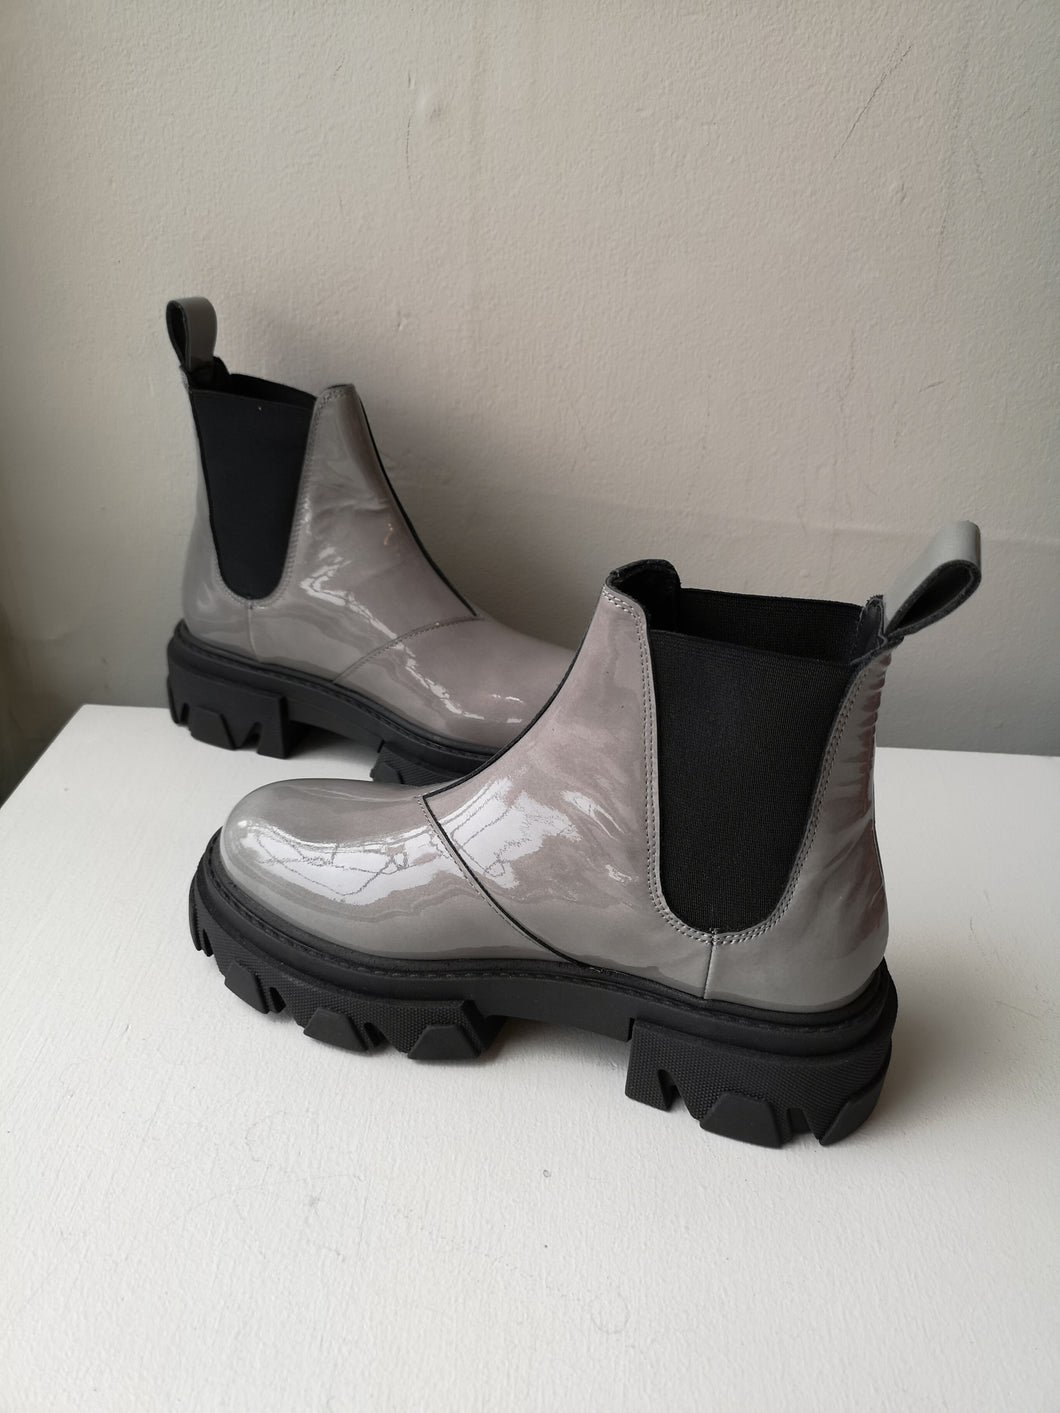 Sister x Soeur Pippa Chelsea Boot - Grey Patent